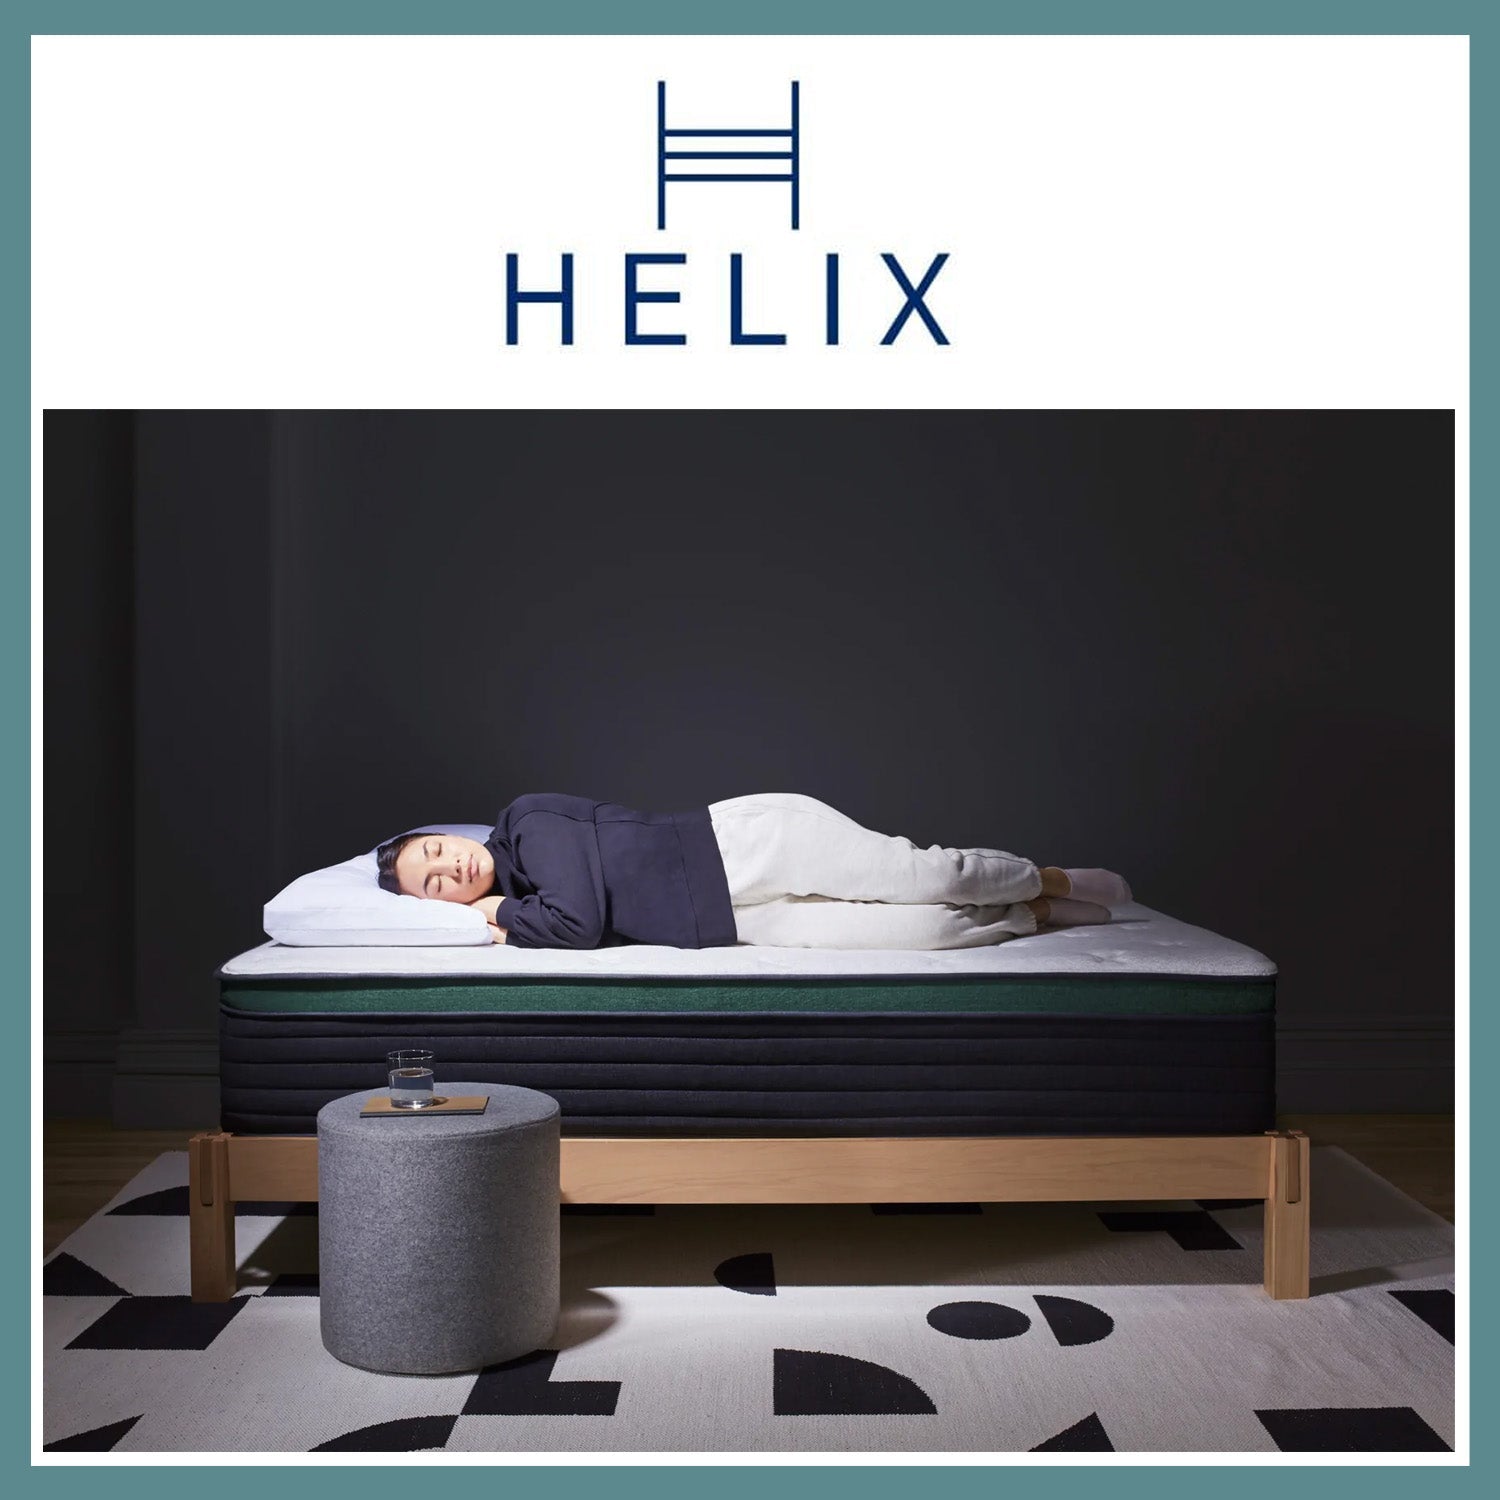 Helix Twilight Luxe Mattress 20% + 2 Free Dream Pillows